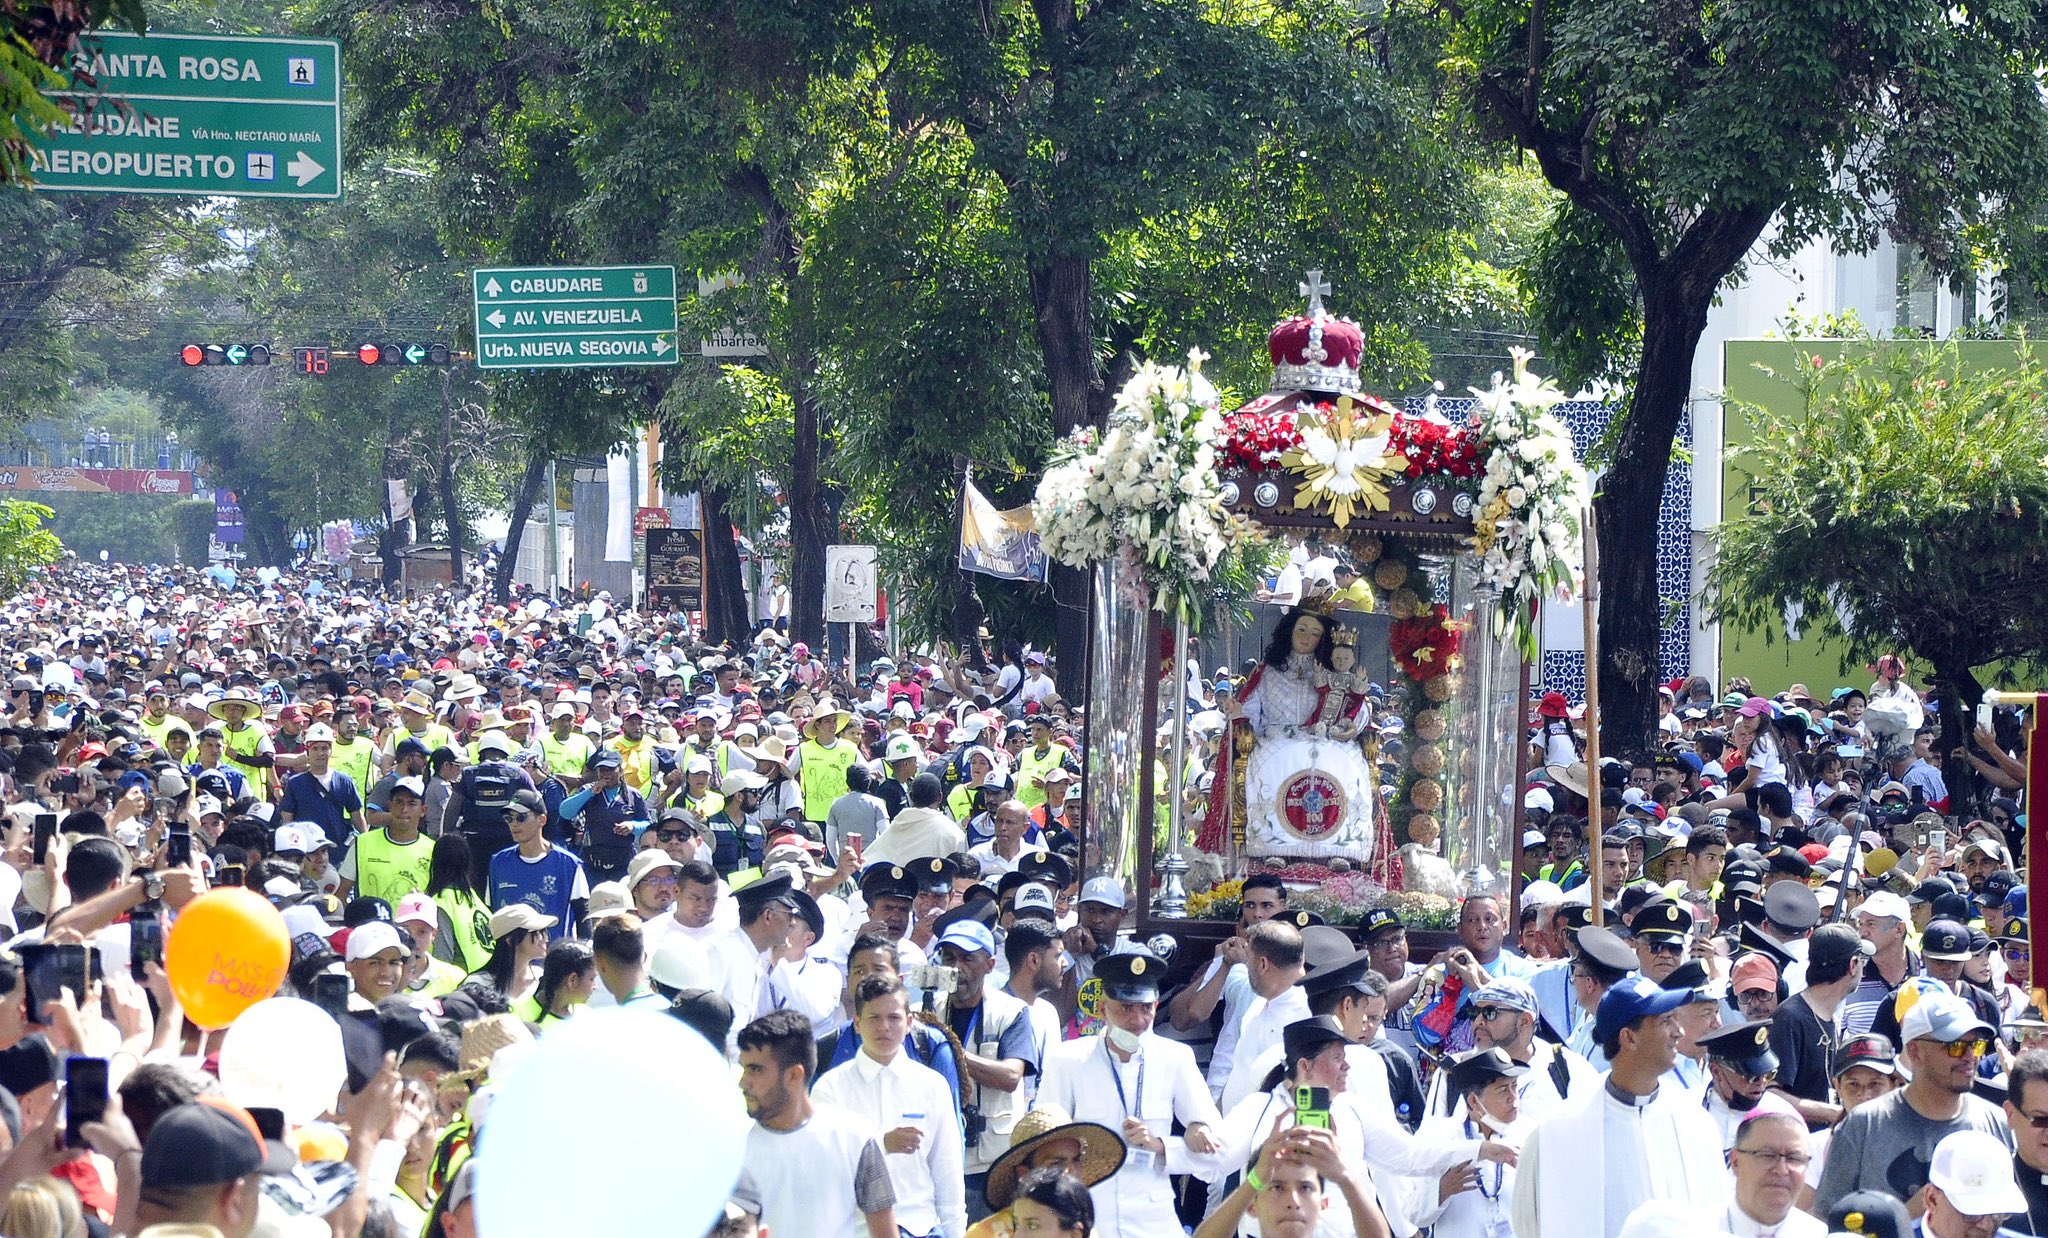 Divina Pastora procession in Barquisimeto, Lara state, Venezuela. Photo: Jesus Vilches/Primicia.